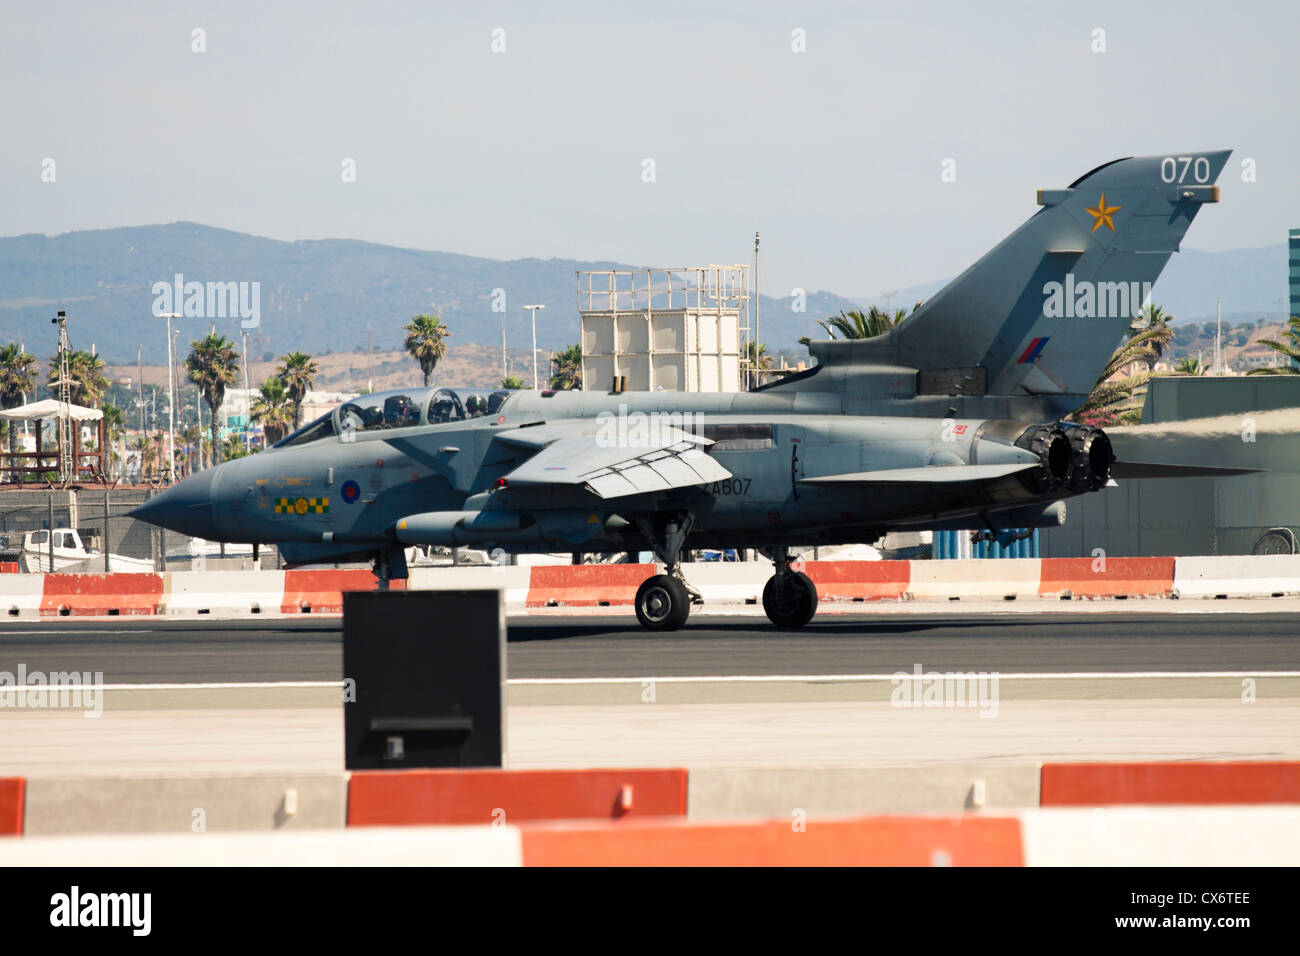 Tornado Aircraft ZA607 at RAF Gibraltar Airport. 2 July 2012, Gibraltar, UK. Stock Photo